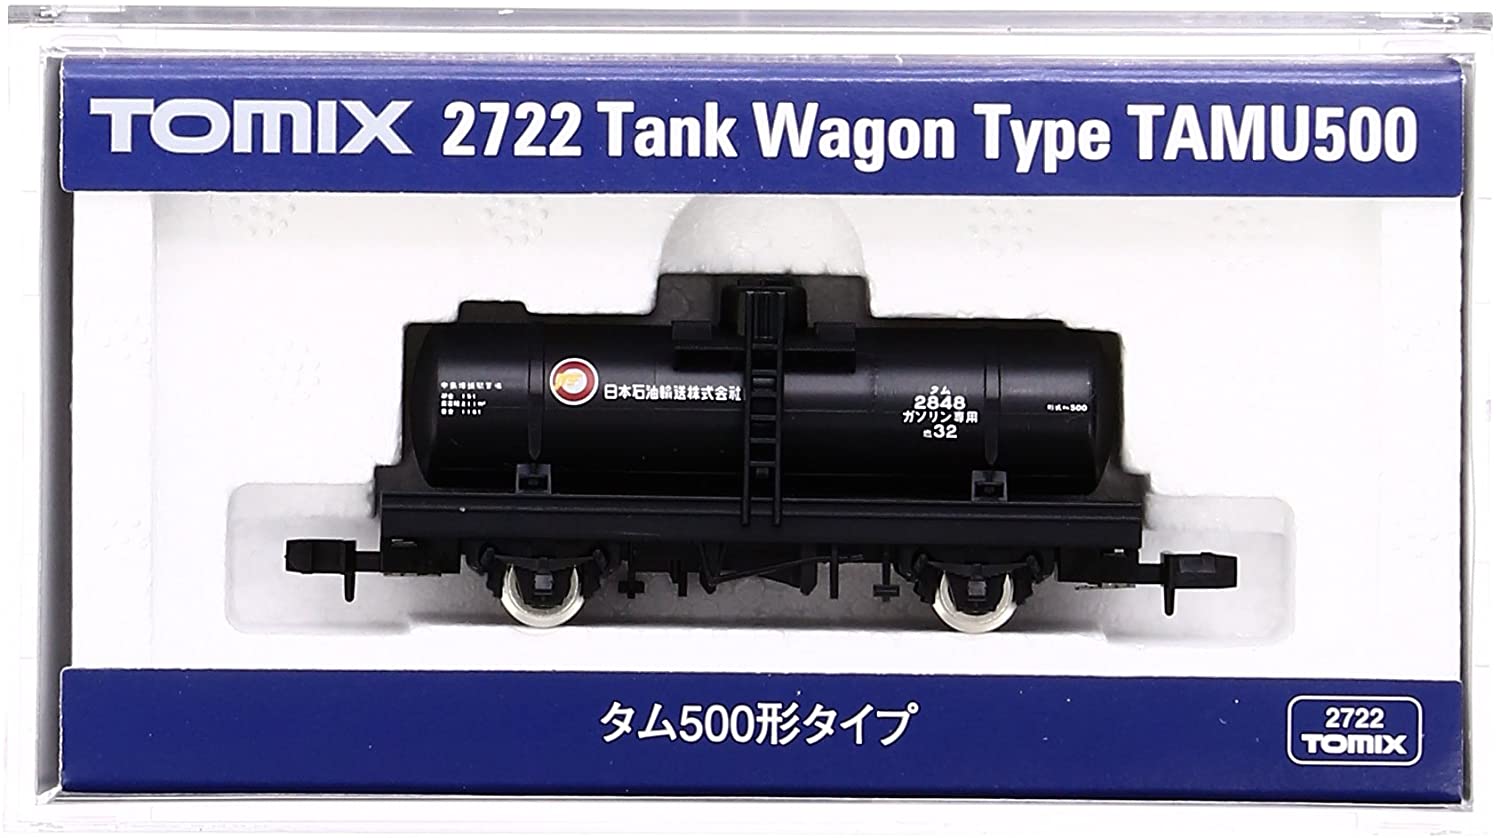 2722 Tank Wagon TAMU500 Type